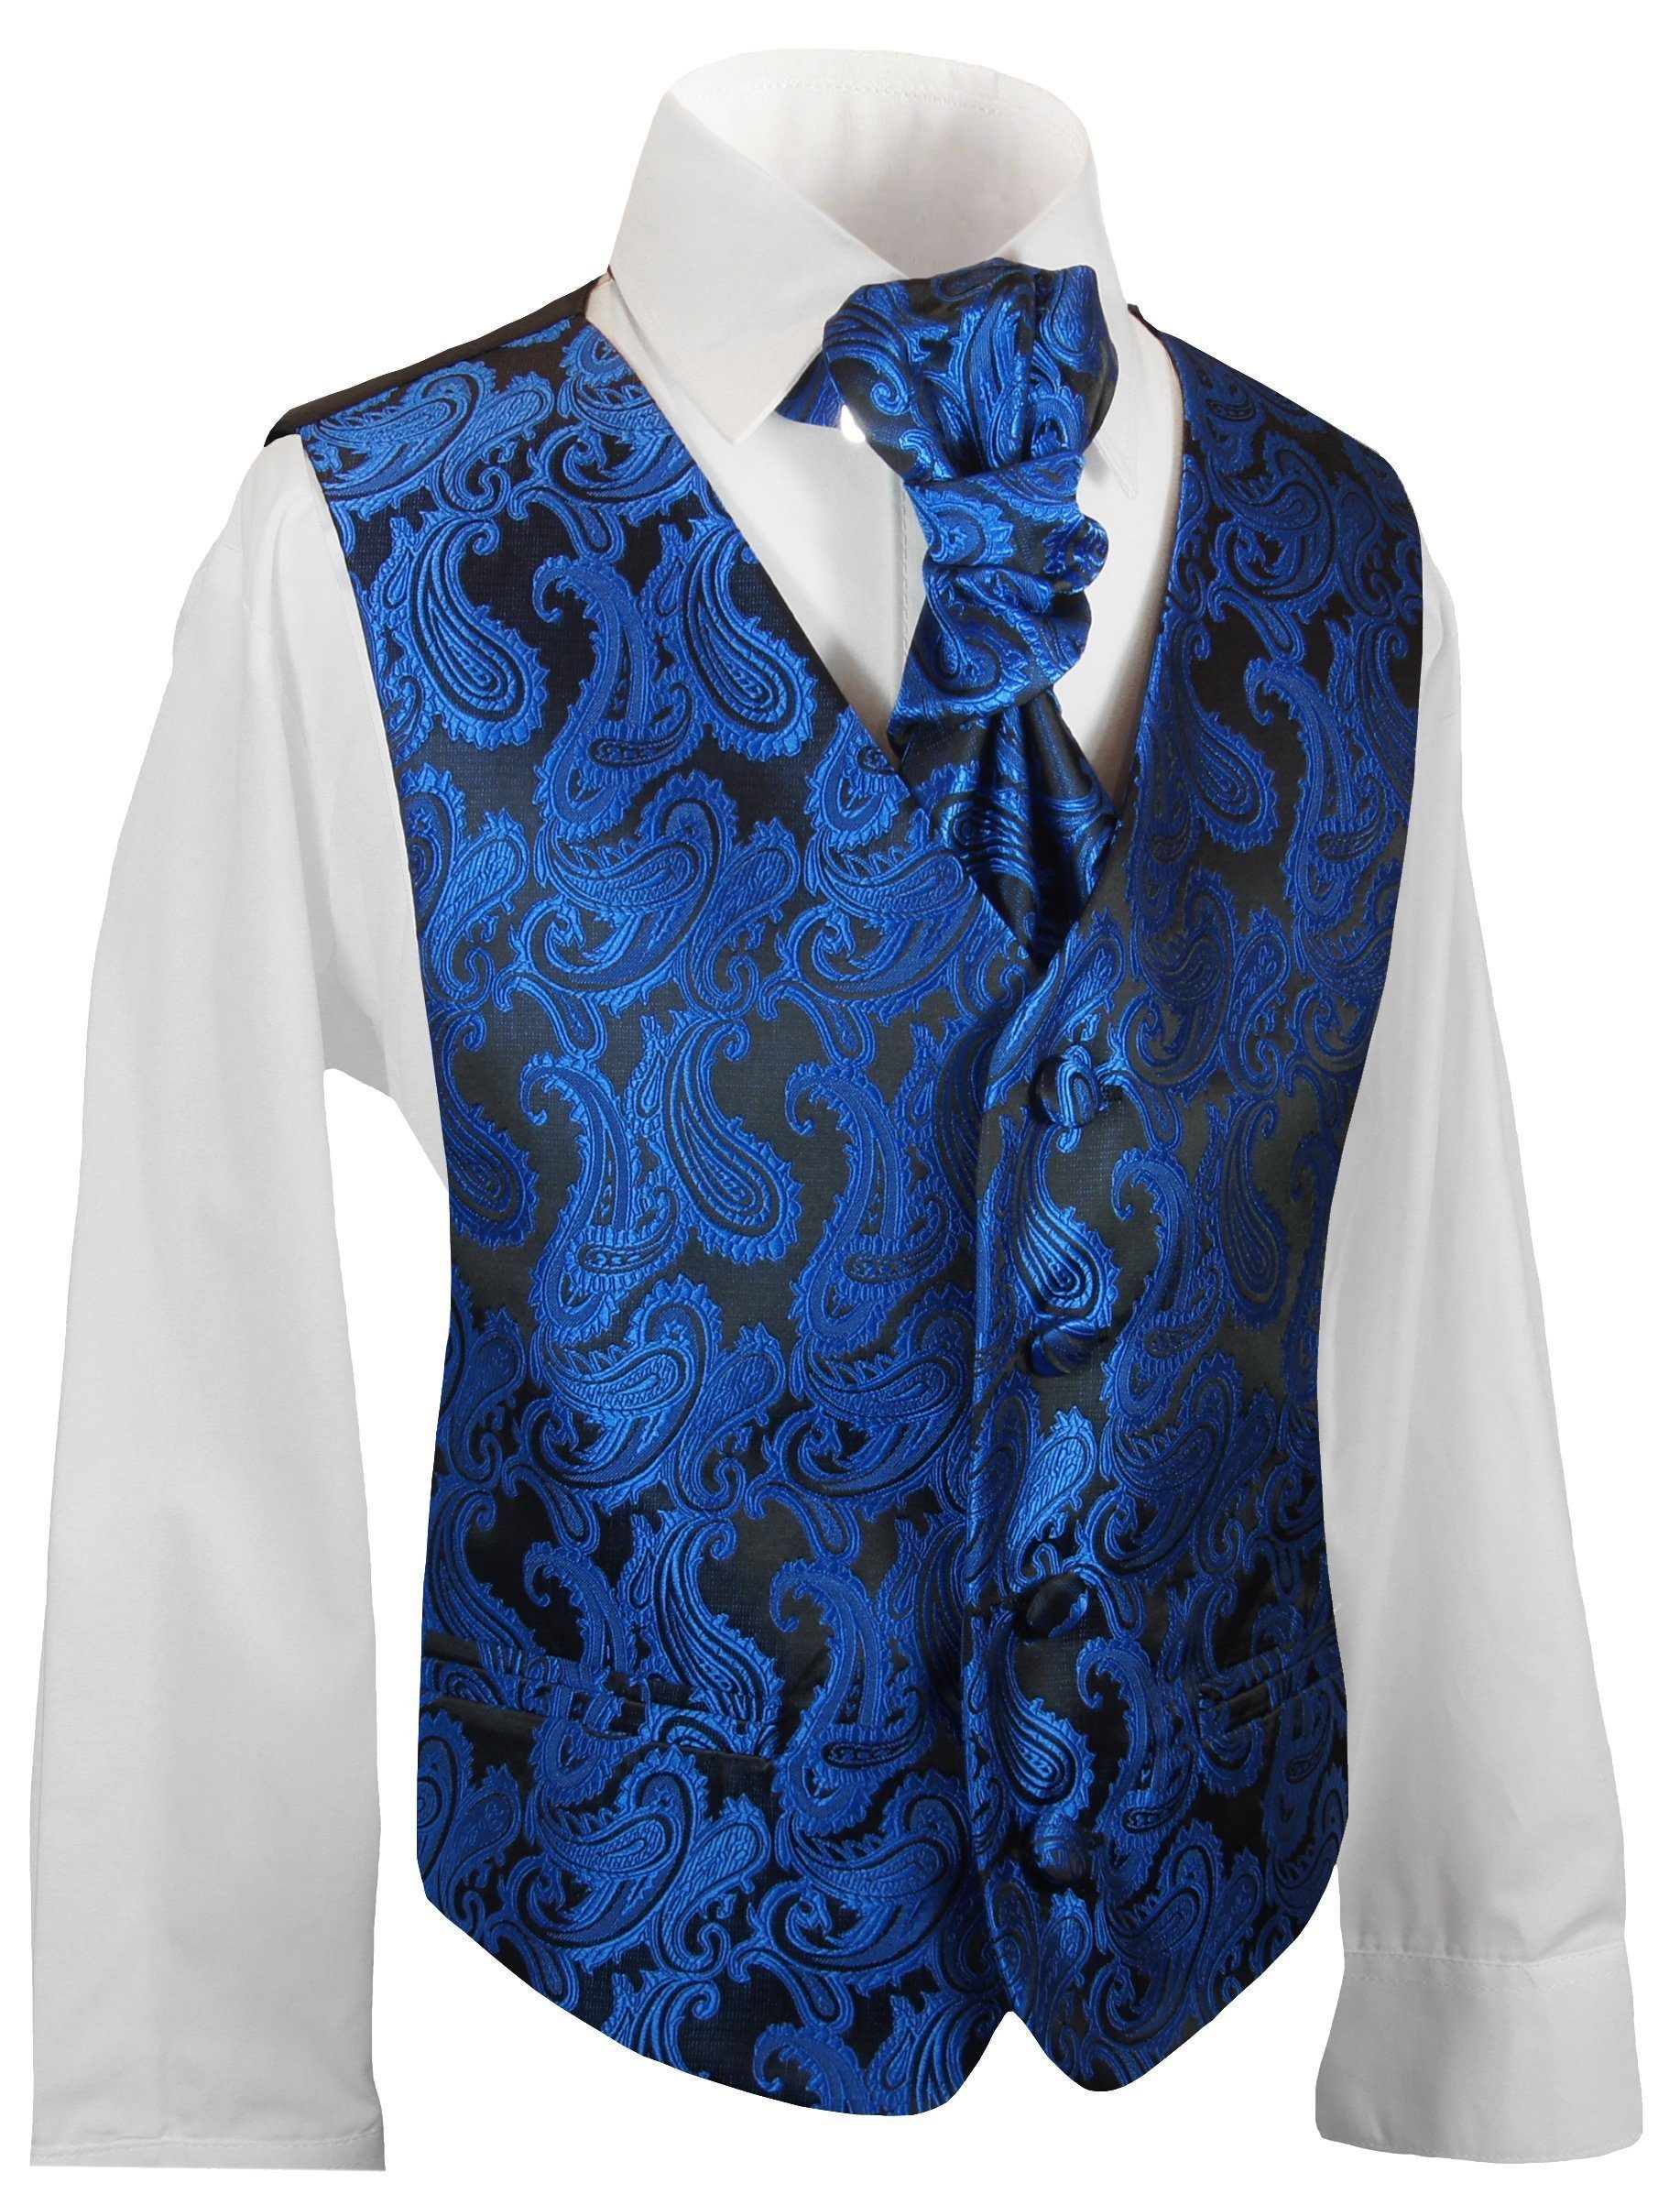 Boys Royal Blue Paisley Tuxedo Vest with Cravat | Black tie attire